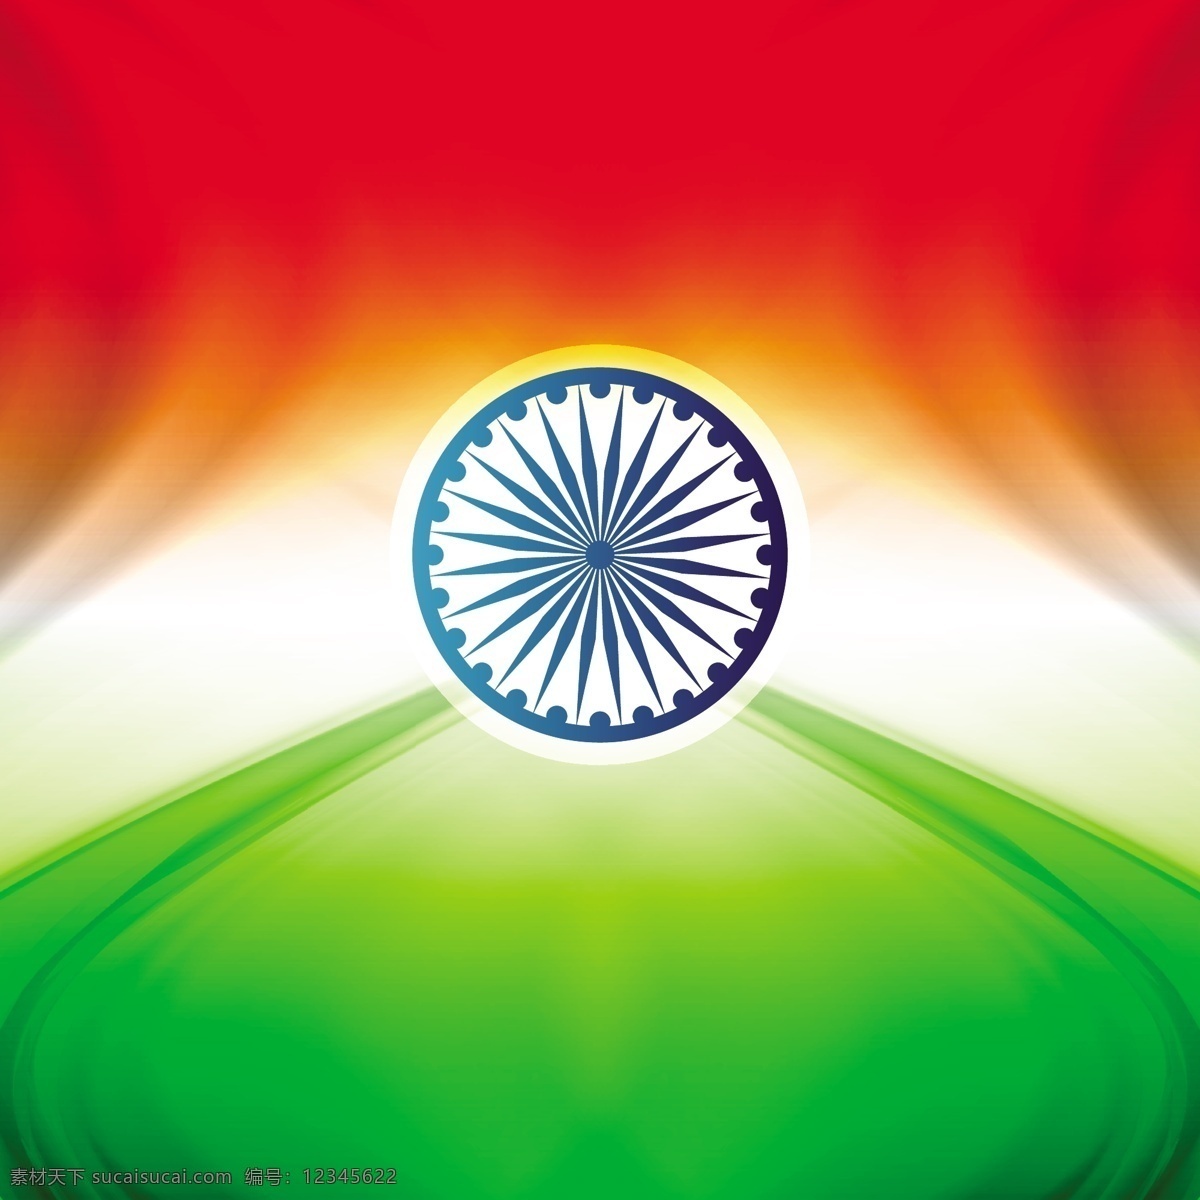 美丽 印度 国旗 牌 背景 抽象 节日 车轮 和平 印度国旗 独立日 国家 自由 一天 政府 波浪 爱国 一月 红色